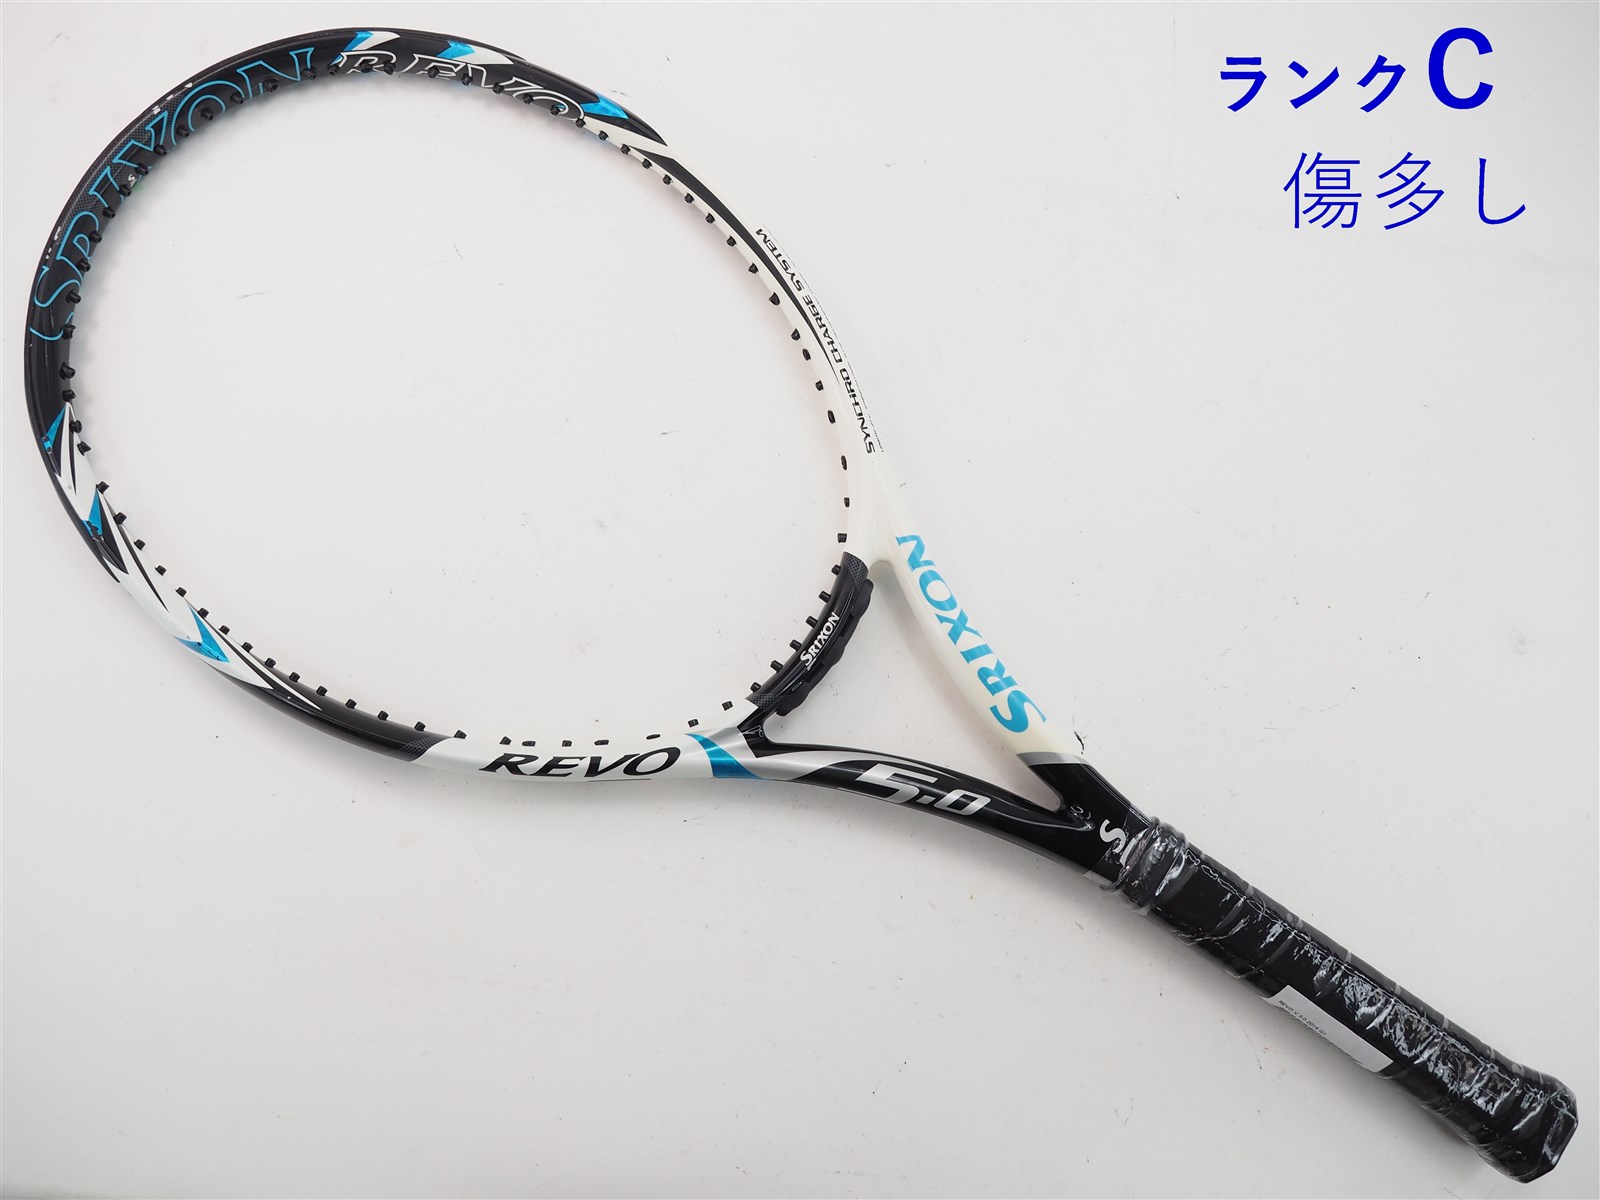 テニスラケット スリクソン レヴォ シーブイ 5.0 2018年モデル【一部グロメット割れ有り】 (G2)SRIXON REVO CV 5.0 201823-265-19mm重量